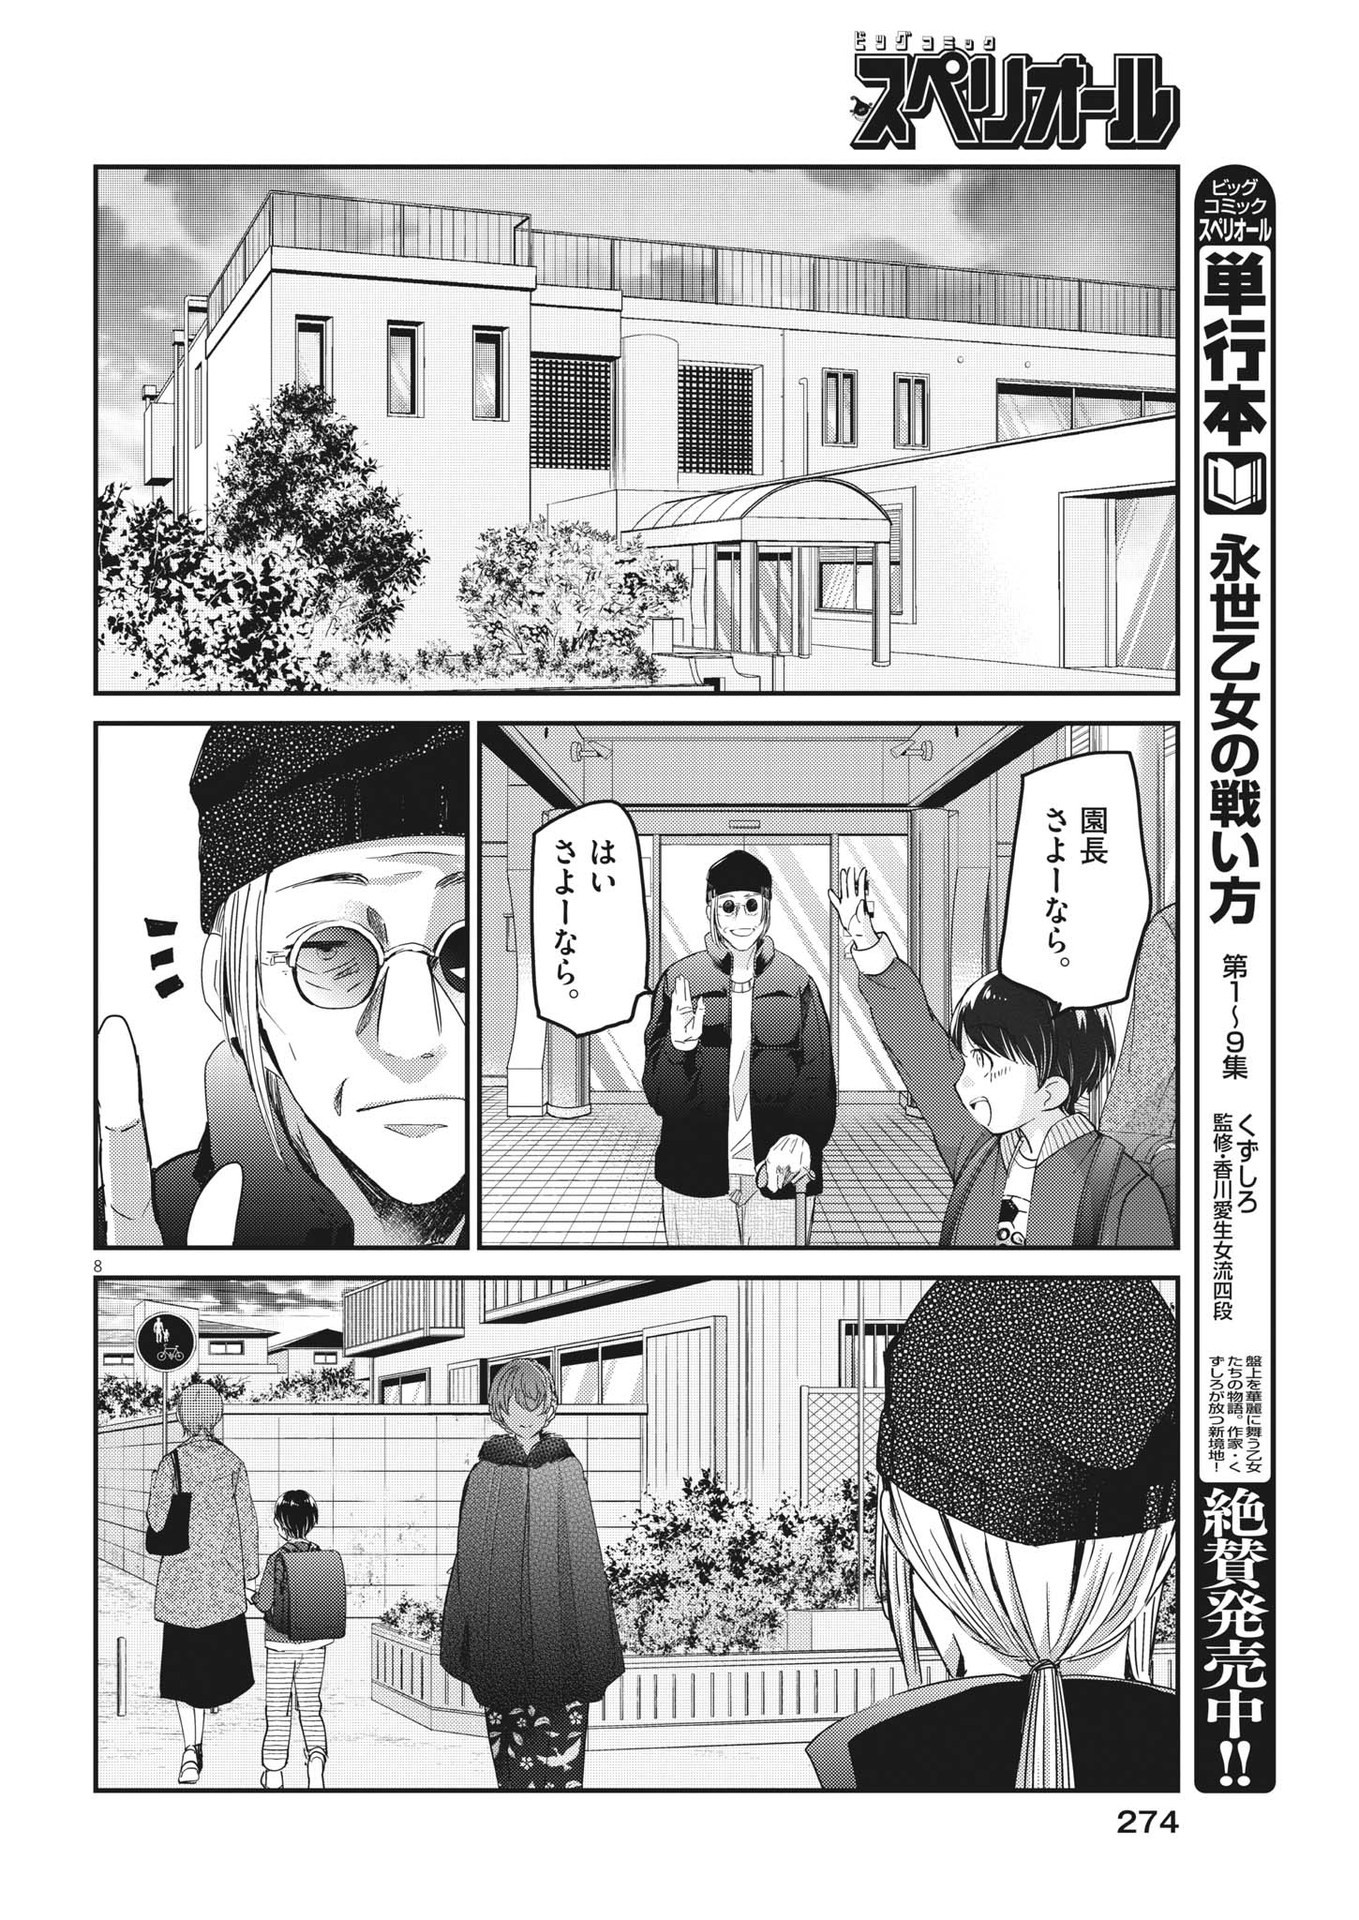 Eisei Otome no Tatakai-kata - Chapter 88 - Page 8